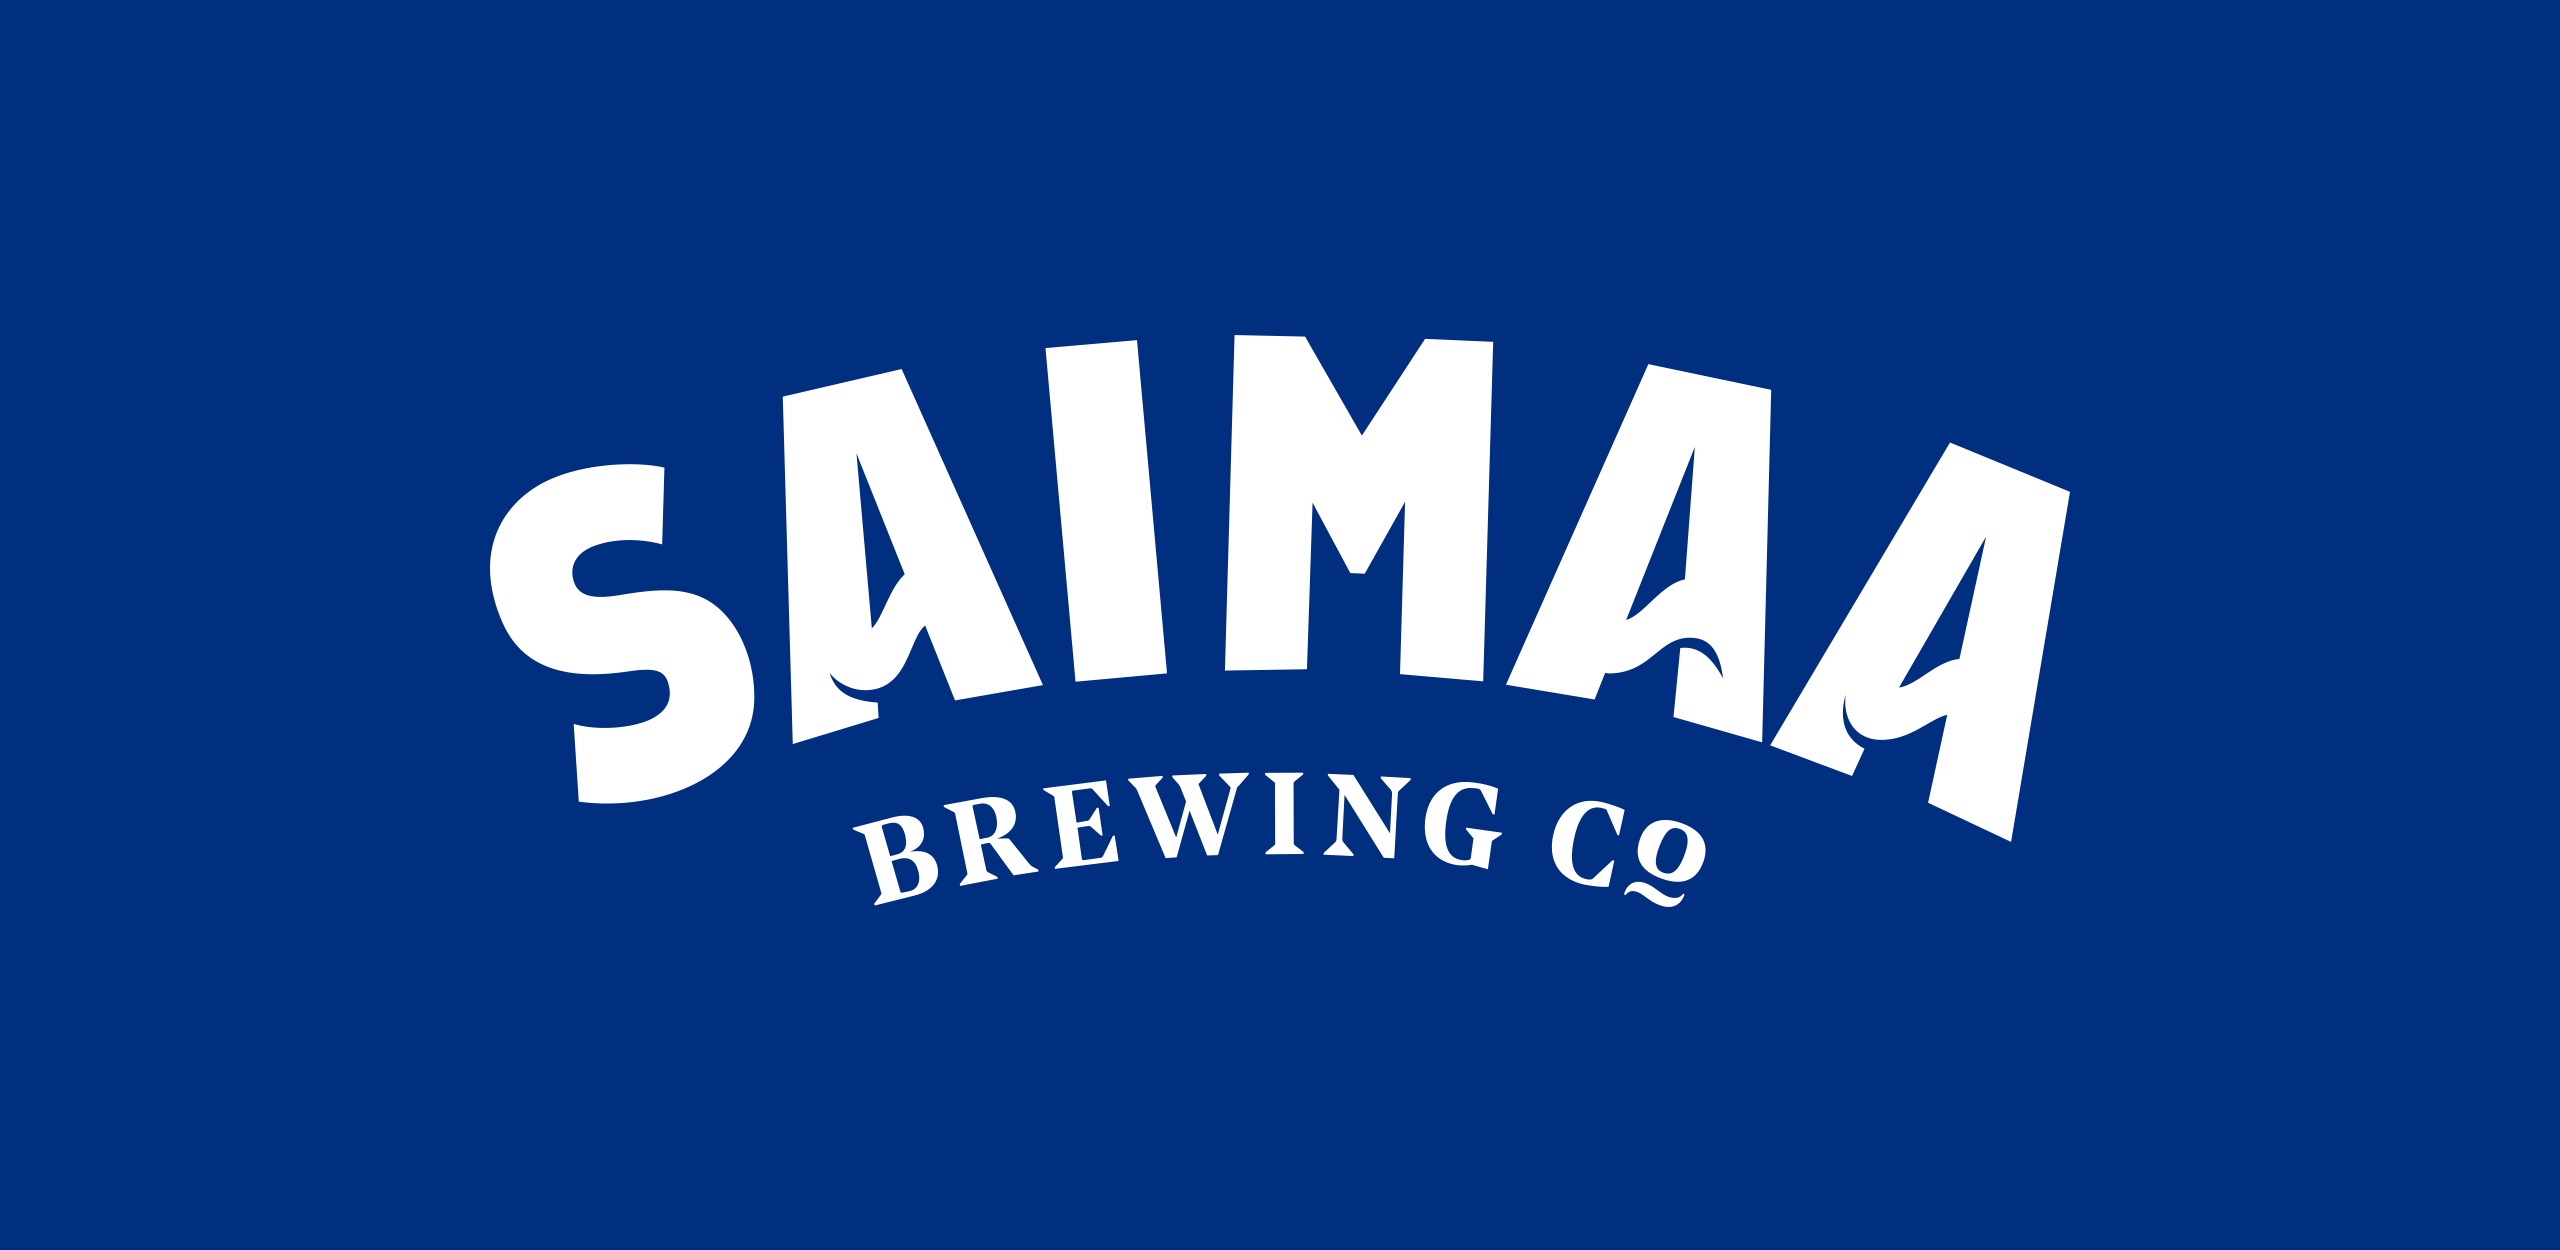 Saimaa_logo